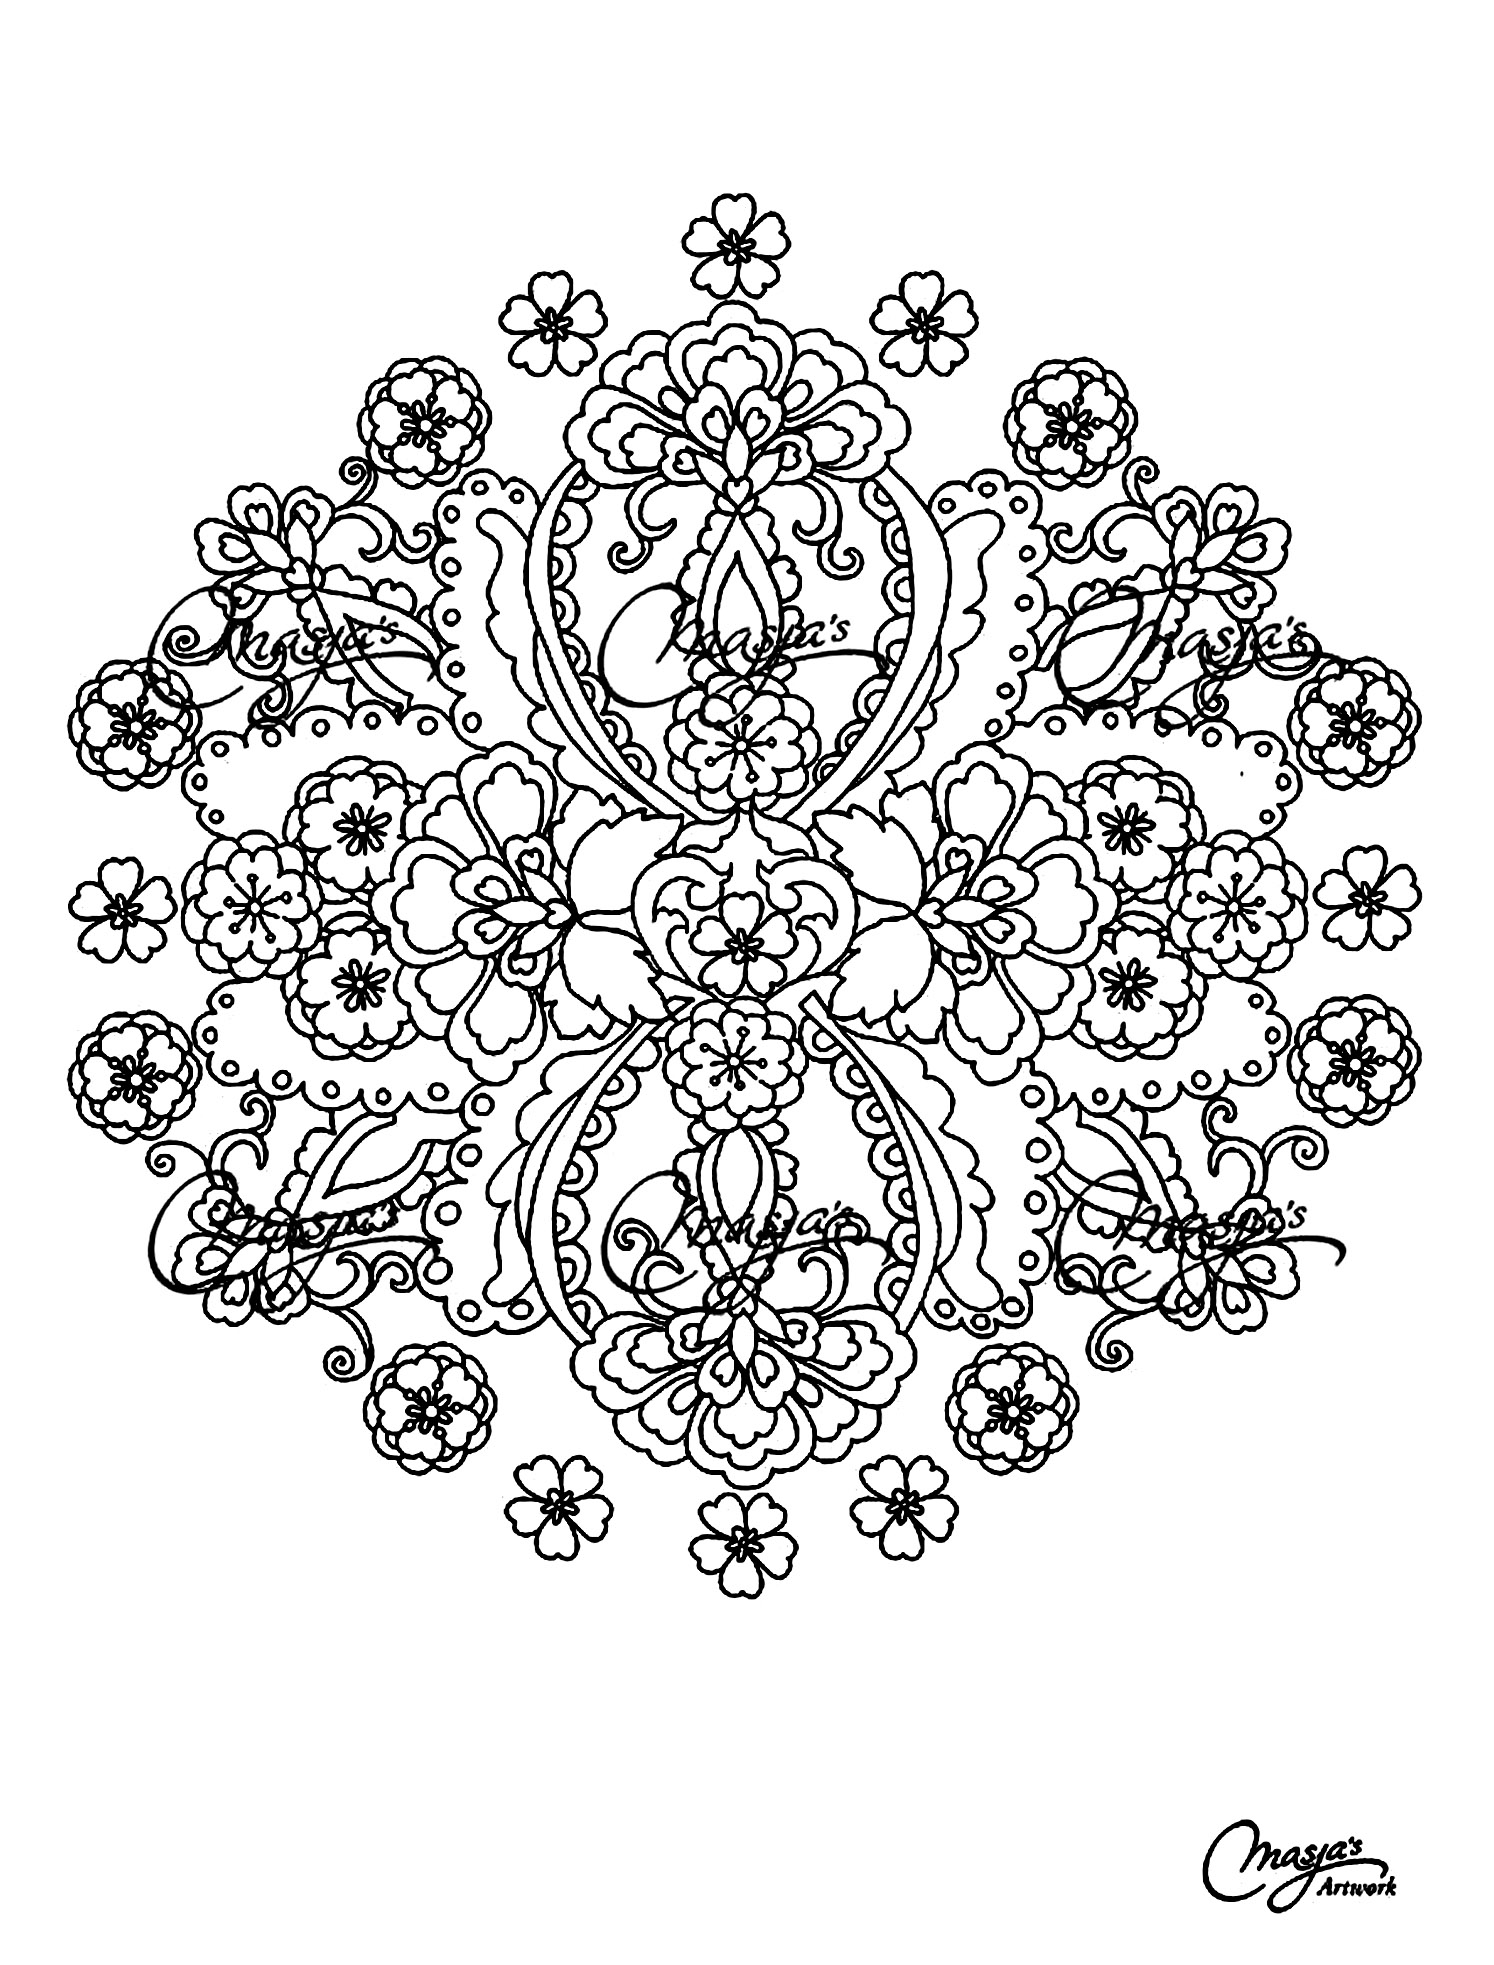 Originelles, ziemlich blumiges Mandala mit verschiedenen Arten von Blumen. Ziemlich kompliziert auszumalen.